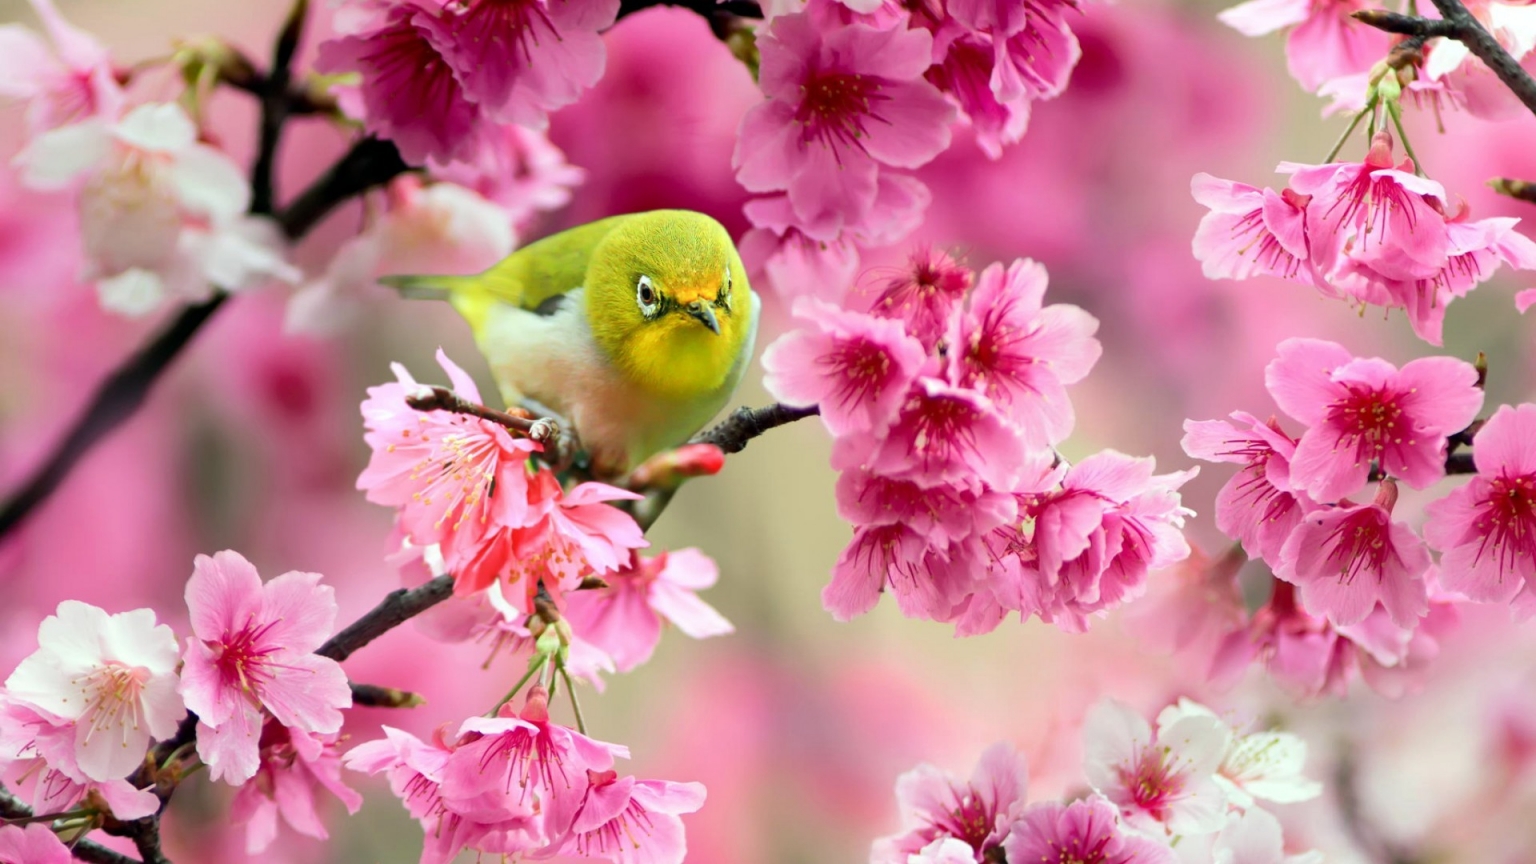 Lovely Japanese White-eye Bird for 1536 x 864 HDTV resolution